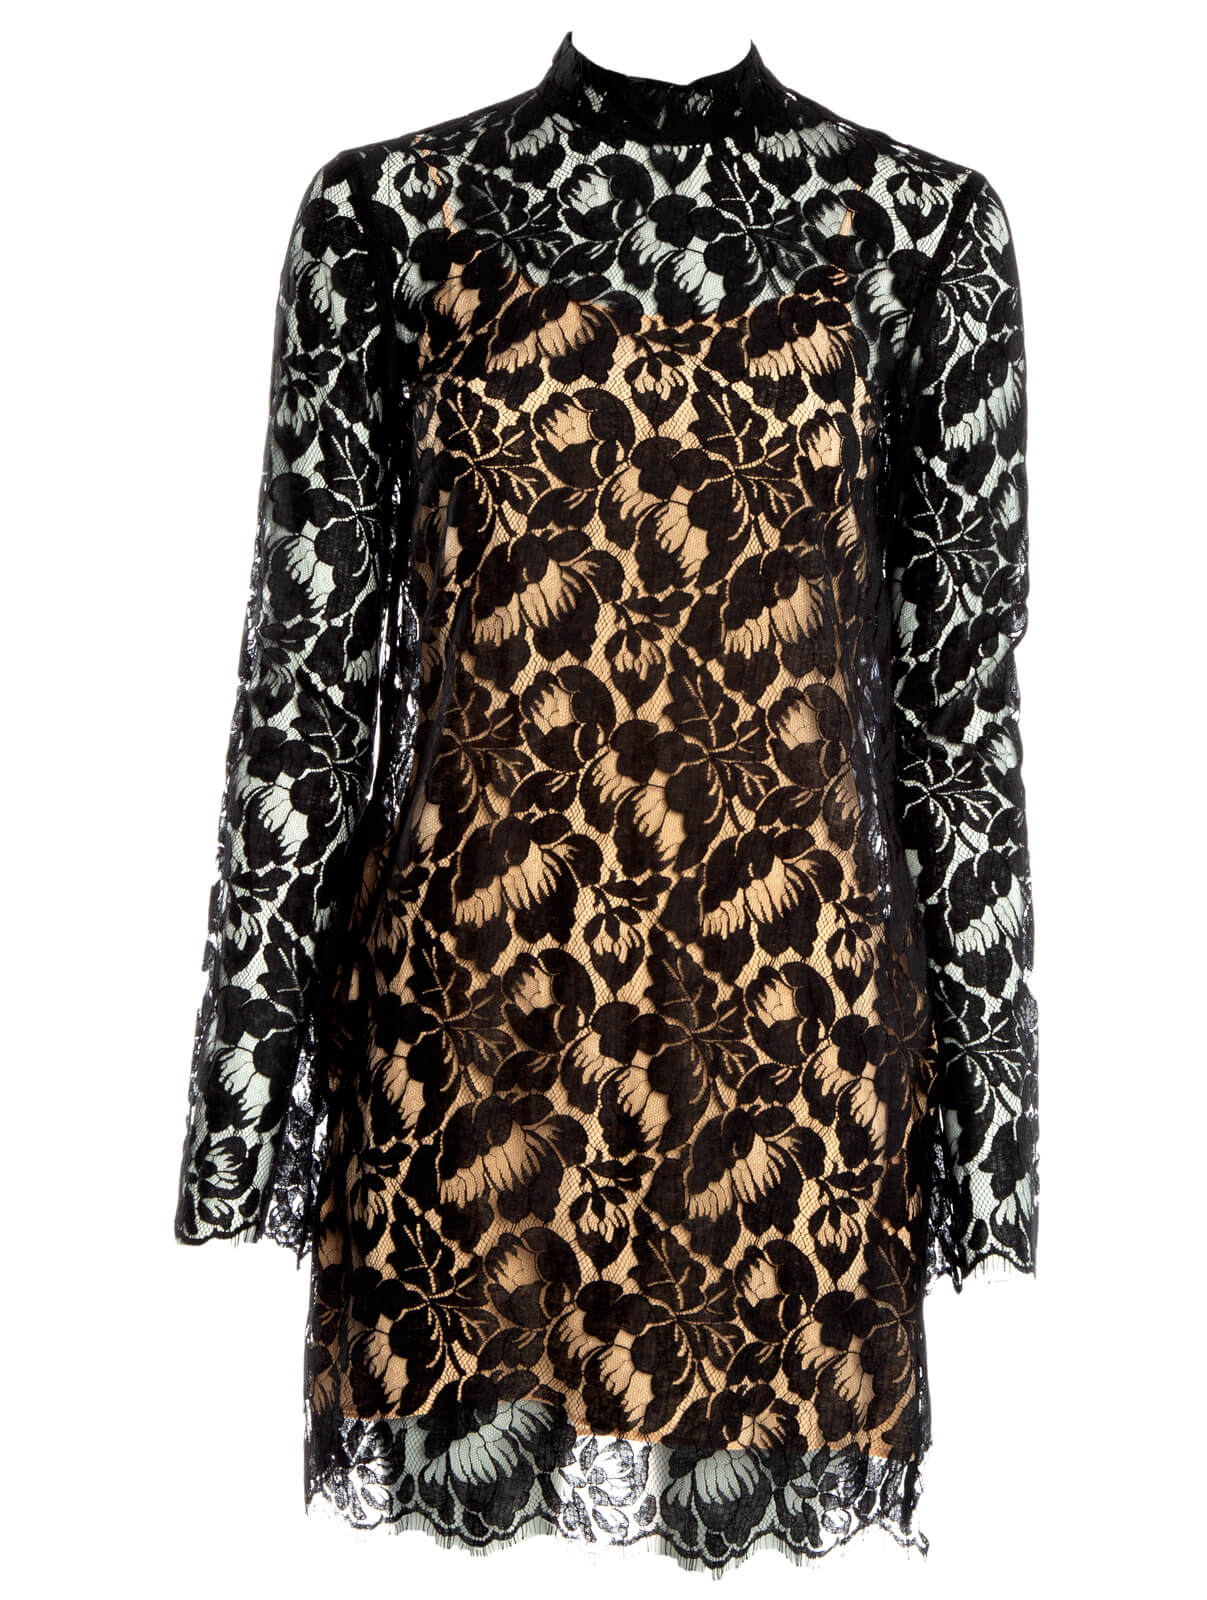 Stella Mccartney Women's Lace Dress, Size 6 UK, Black Cotton